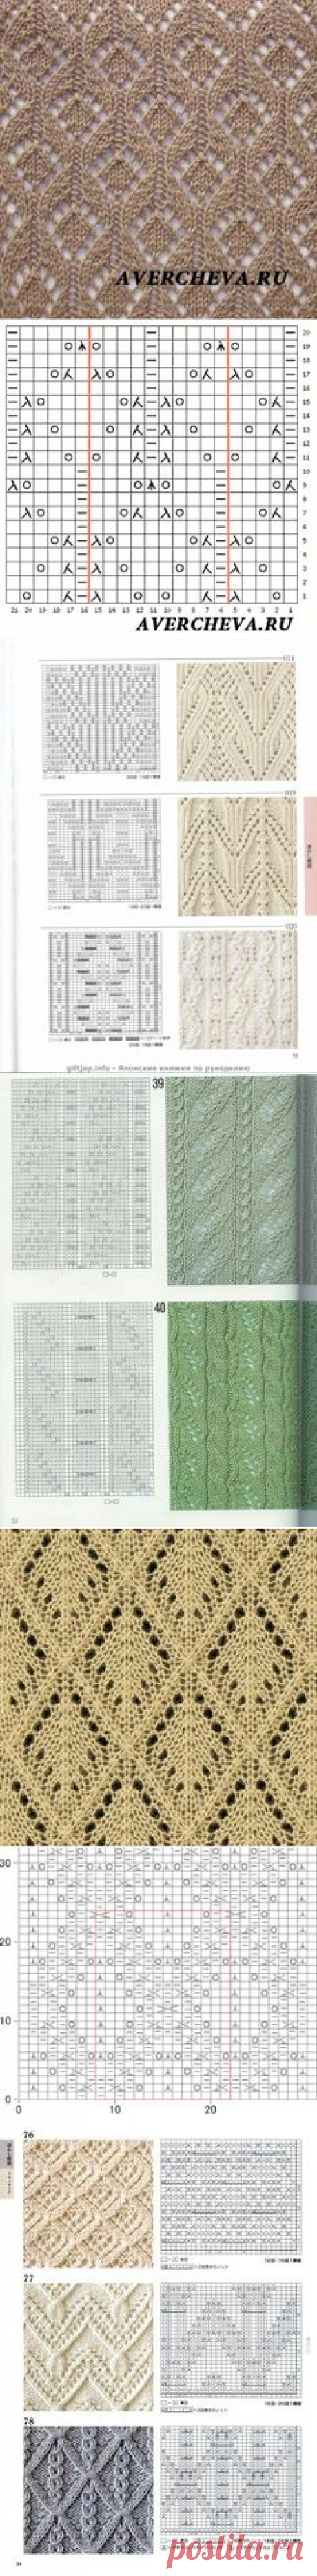 (80) Stitch Patterns в Pinterest, узоры.